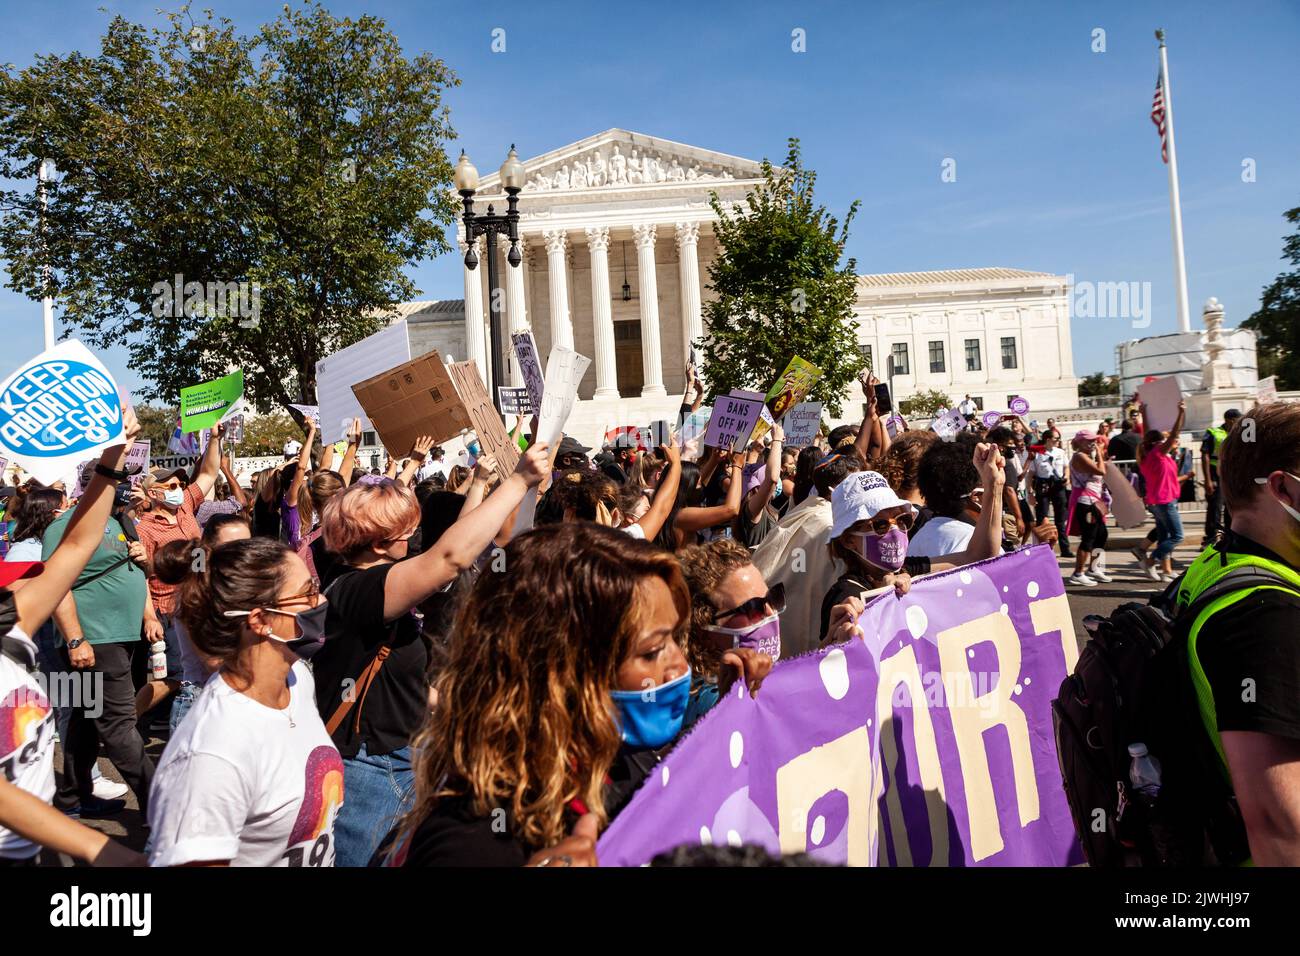 Während der Marsch-Kundgebung für Abtreibungsrichter der Frauen marschieren Demonstranten am Obersten Gerichtshof vorbei. Die Demonstranten forderten die US-Regierung auf, die reproduktiven Rechte von Frauen und den Zugang zu Abtreibungen landesweit zu schützen. Bundesweit fanden am 2. Oktober mehr als 600 Satellitenproteste statt. Die Ereignisse waren zum Teil eine Reaktion auf restriktive Anti-Abtreibungsgesetze, die kürzlich in Texas und Mississippi verabschiedet wurden, und die Weigerung des Obersten Gerichtshofs, das Gesetz von Texas niederzuschlagen. Stockfoto